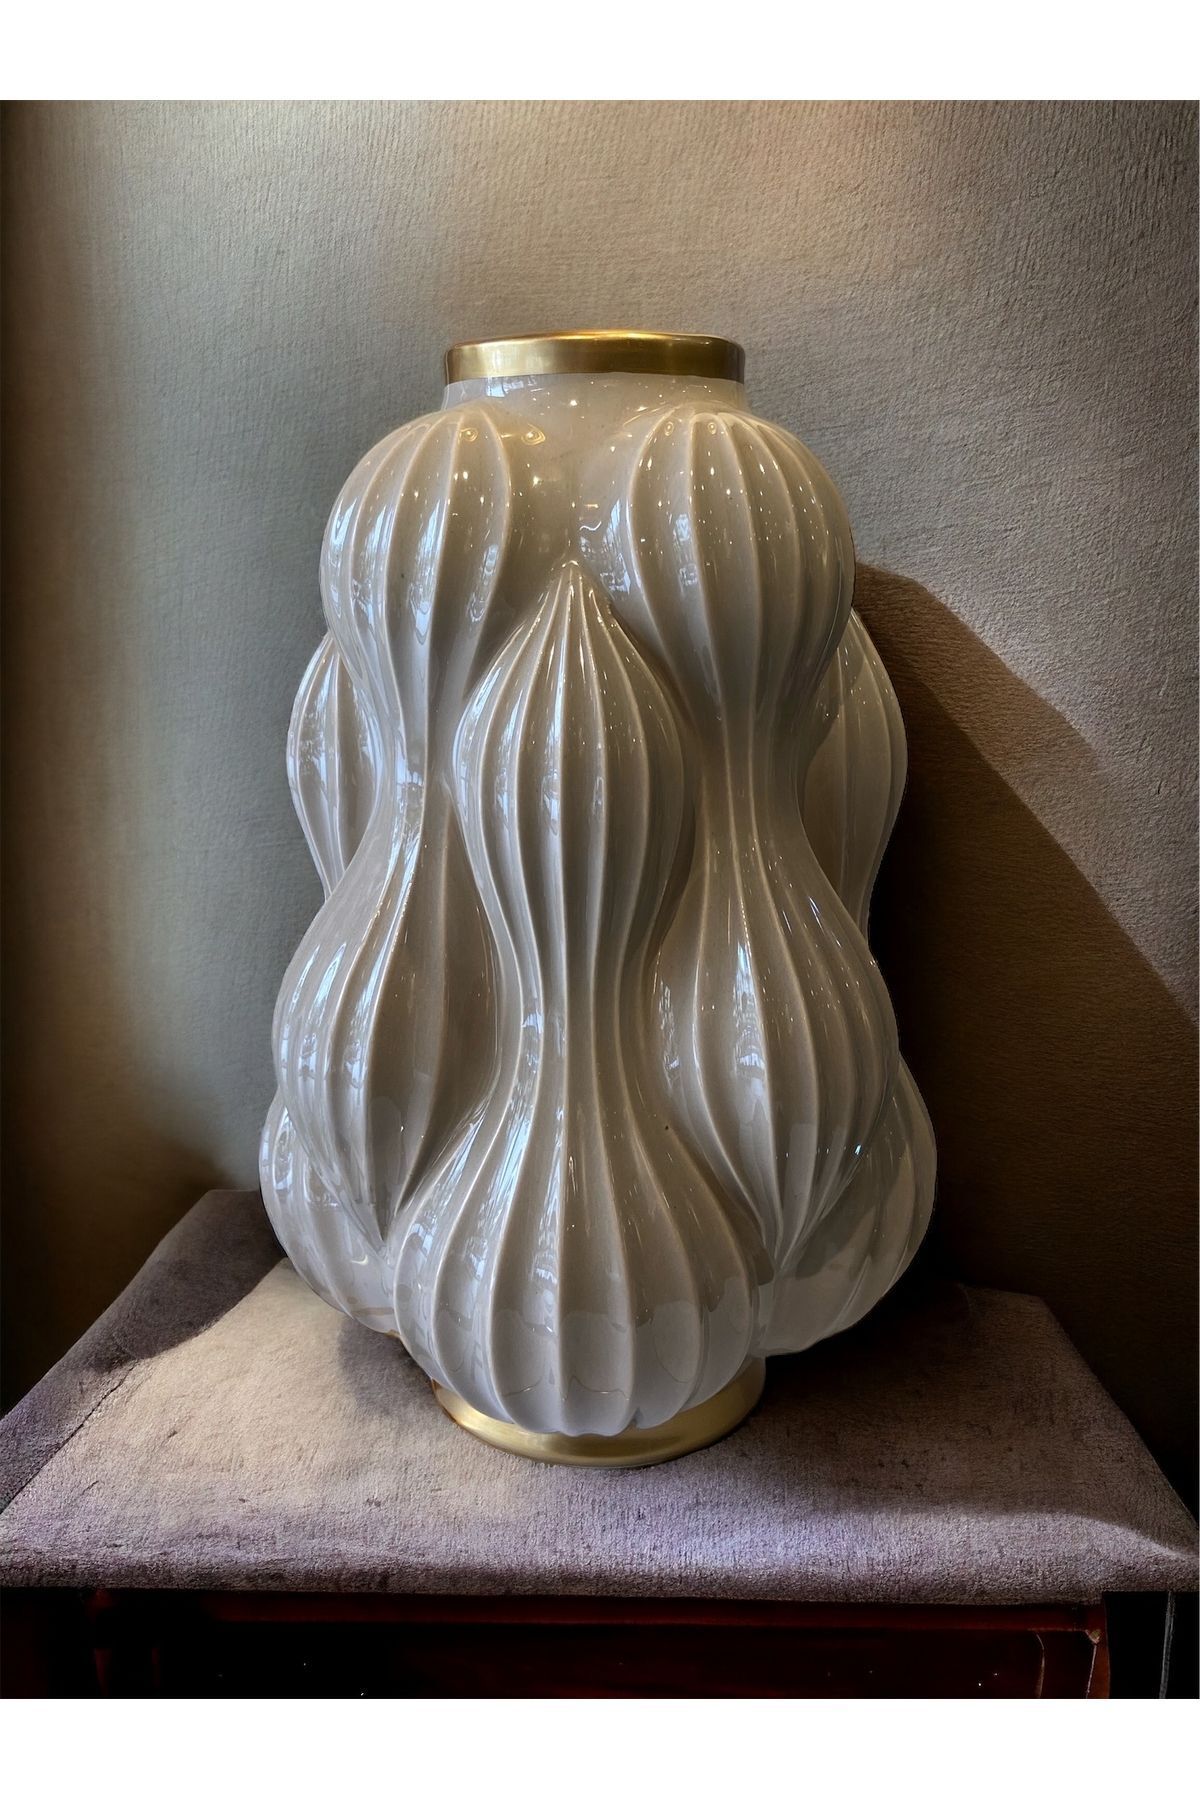 eoshome El yapımı özel tasarım vazo